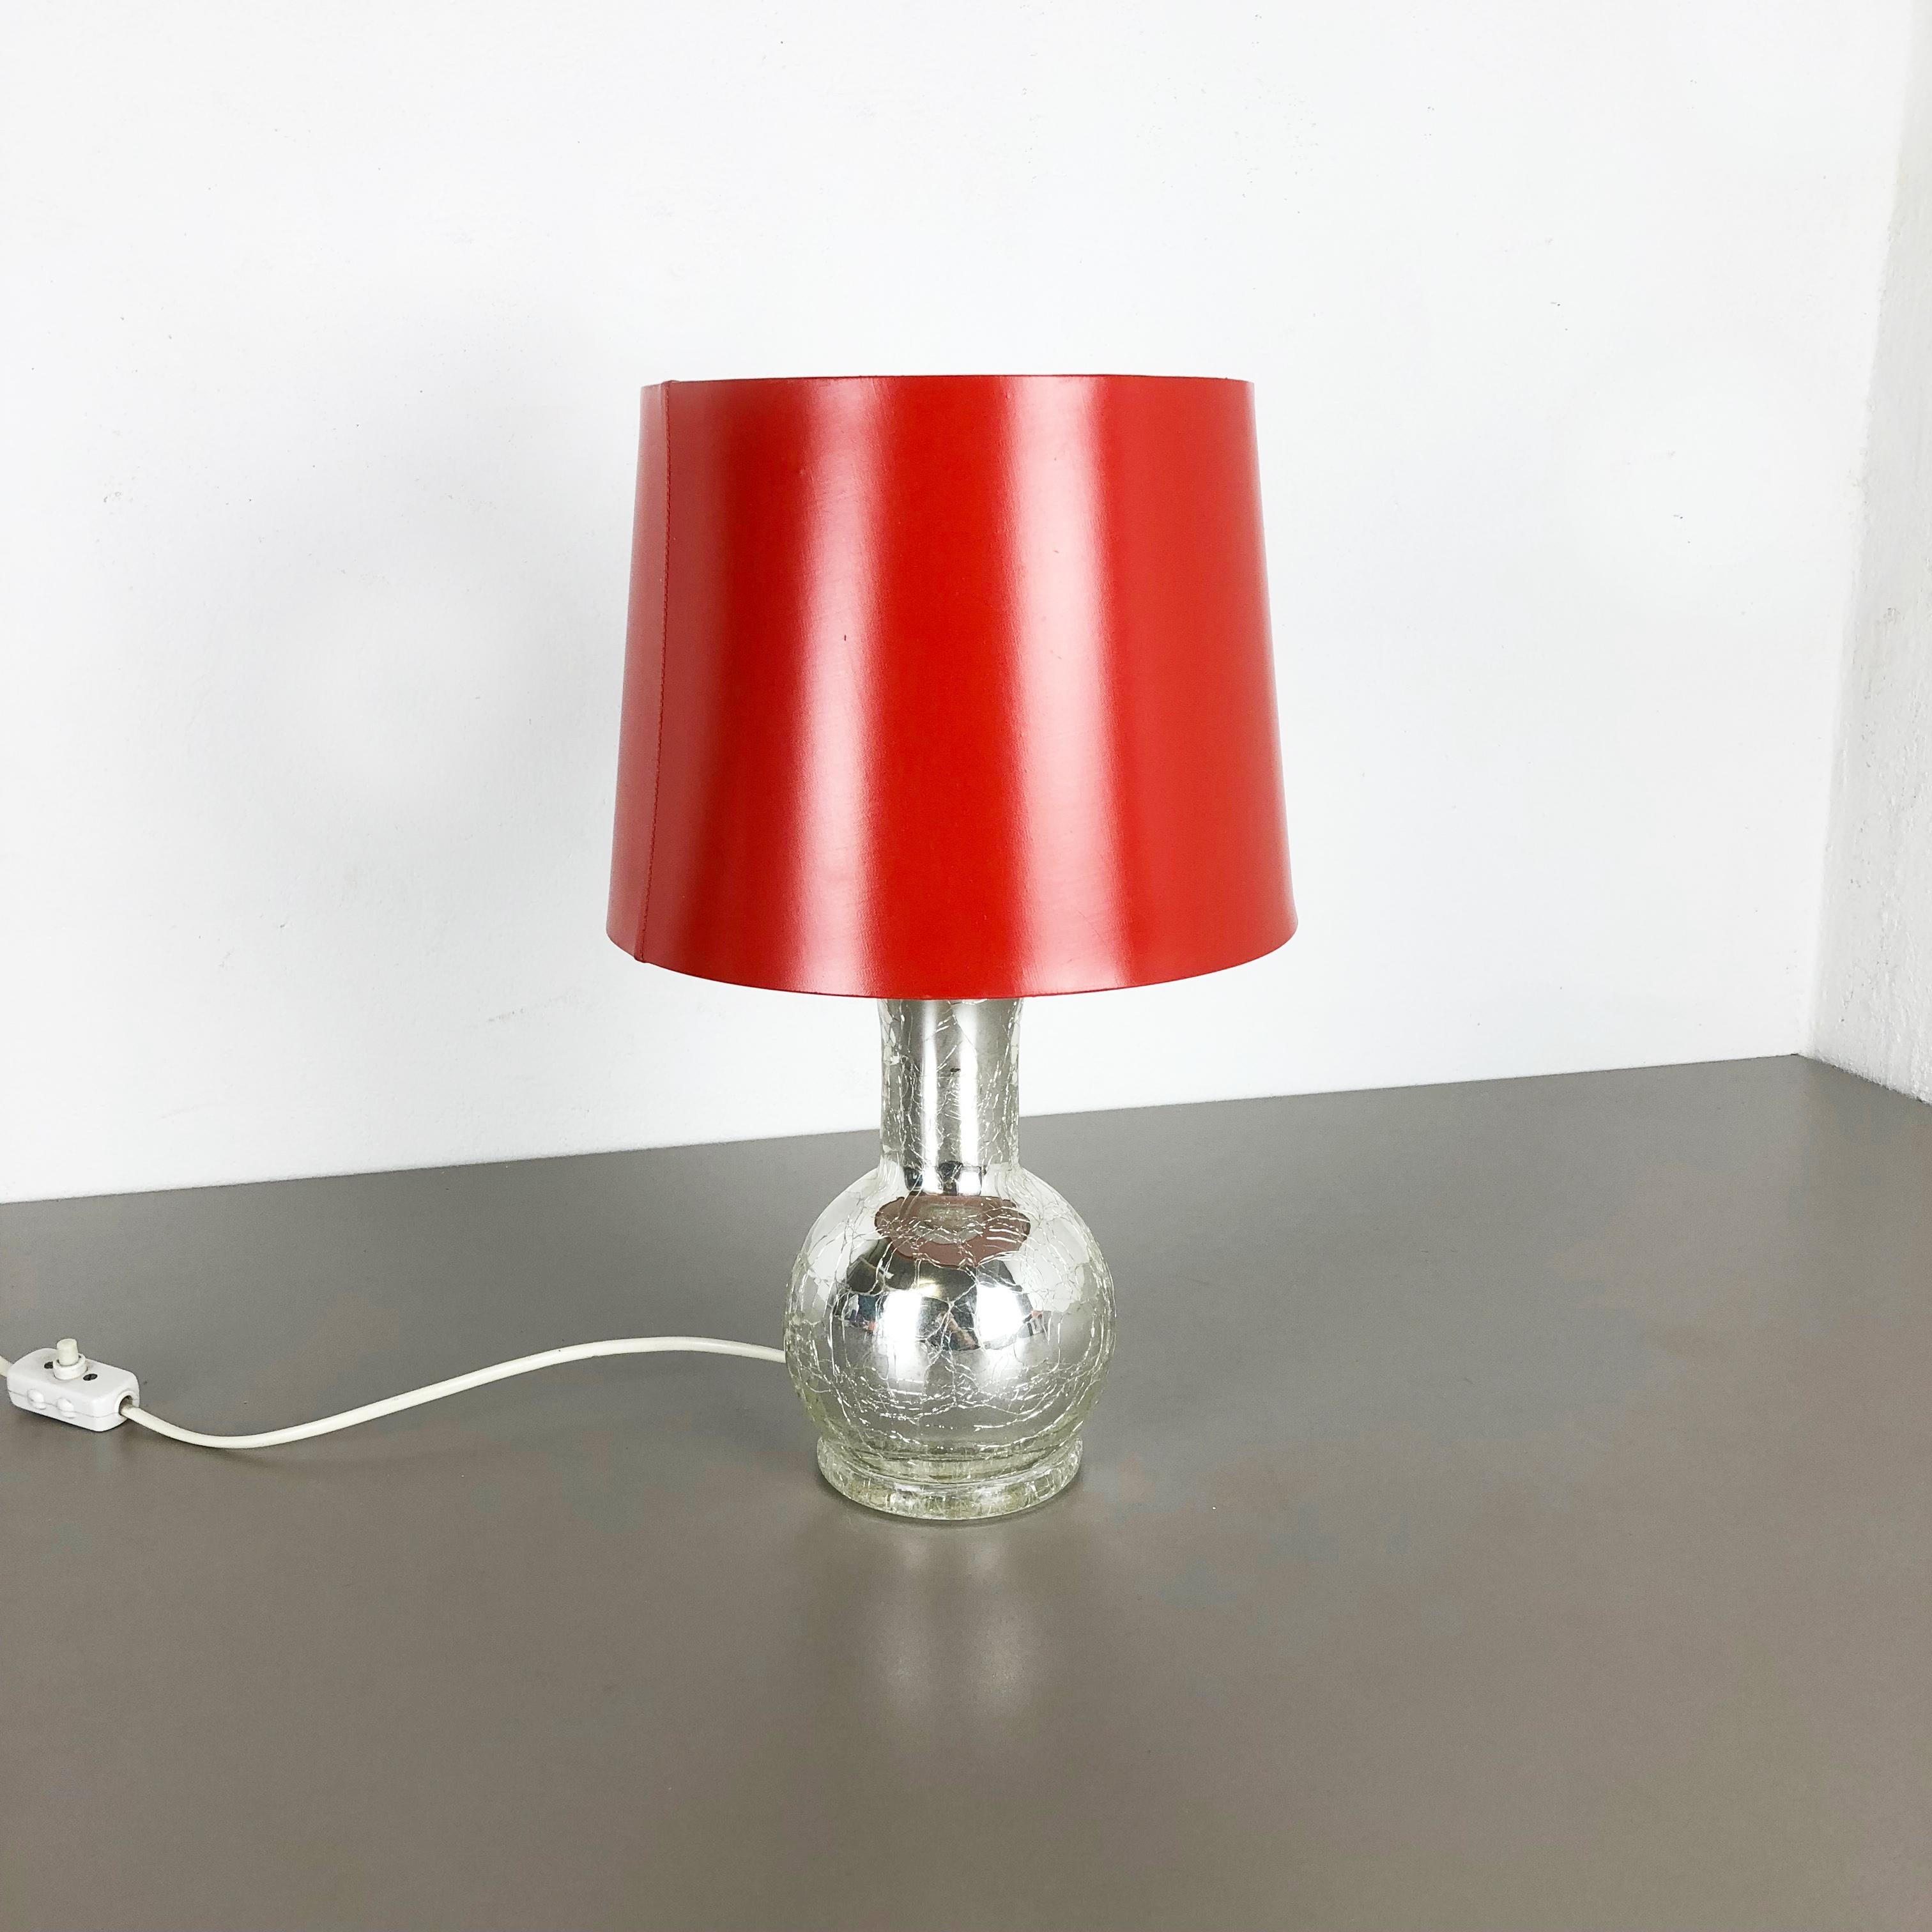 Article :

Lampe de table



Producteur : 

Luxus Vittsjö, Suède


Conception :

Uno & Östen Kristiansson


Origine : 

Suède


Âge : 

1970s



Description : 

Cette fantastique lampe de table a été conçue par Uno &